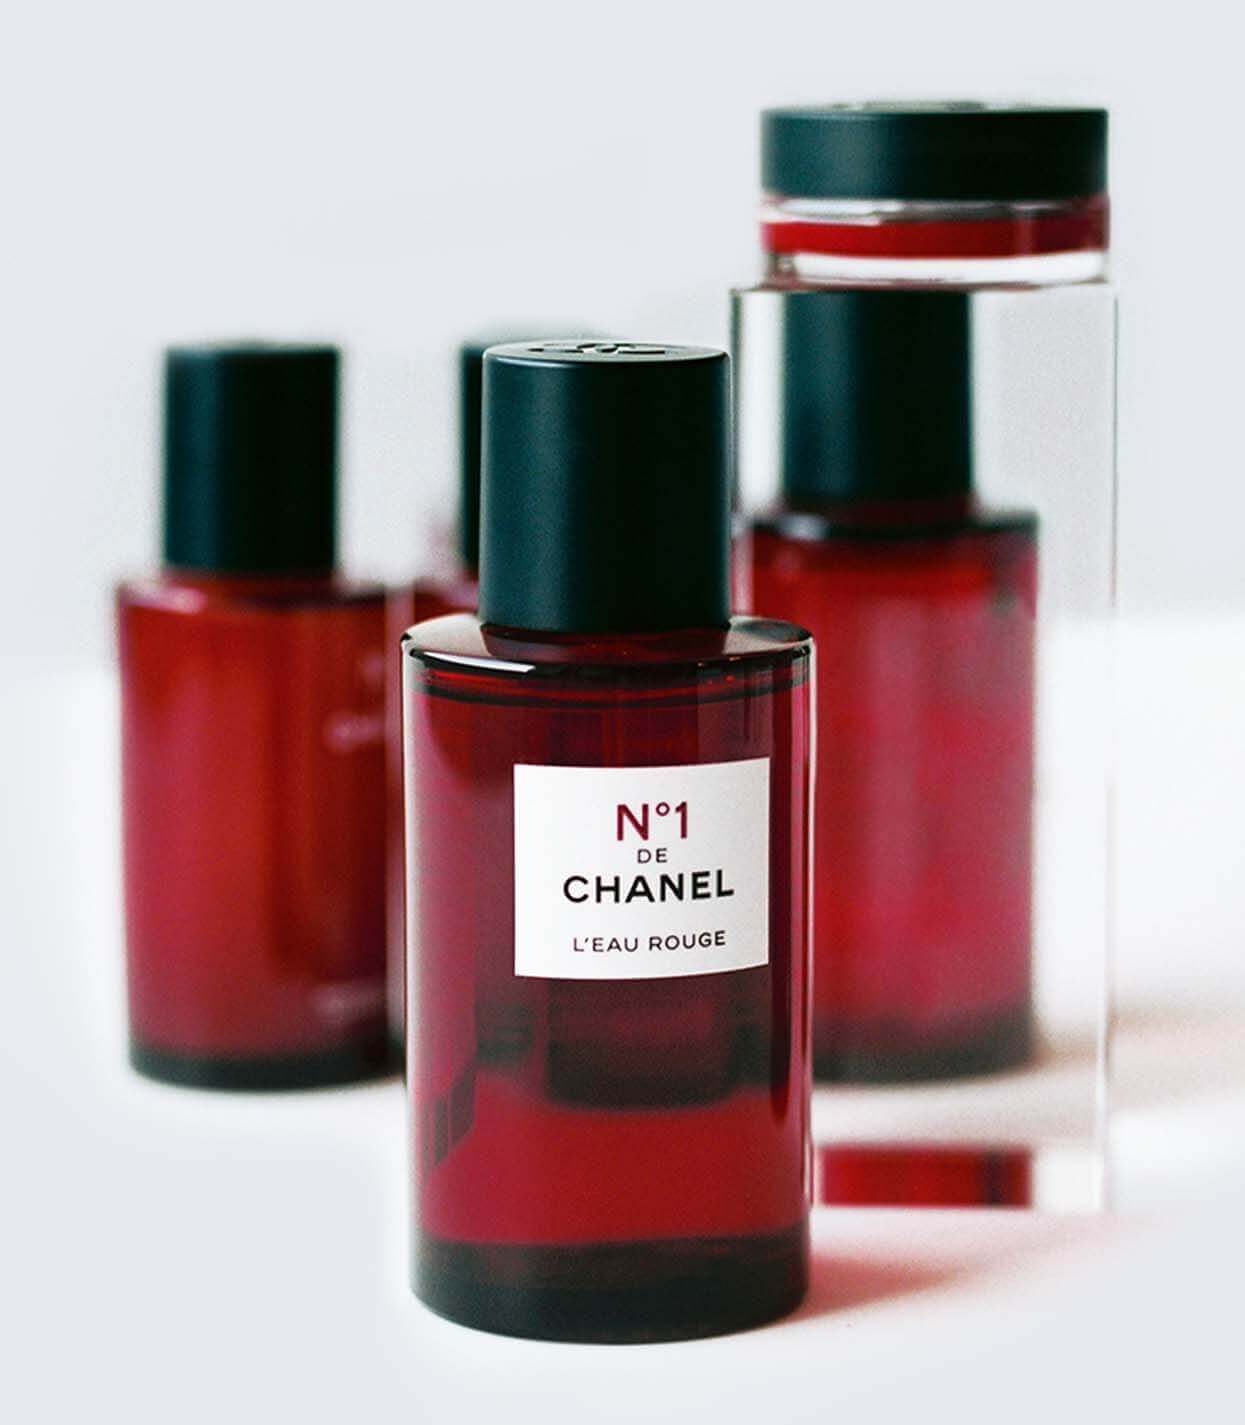 N°1 de Chanel - nowy podkład i hybrydowa pielęgnacja od Chanel